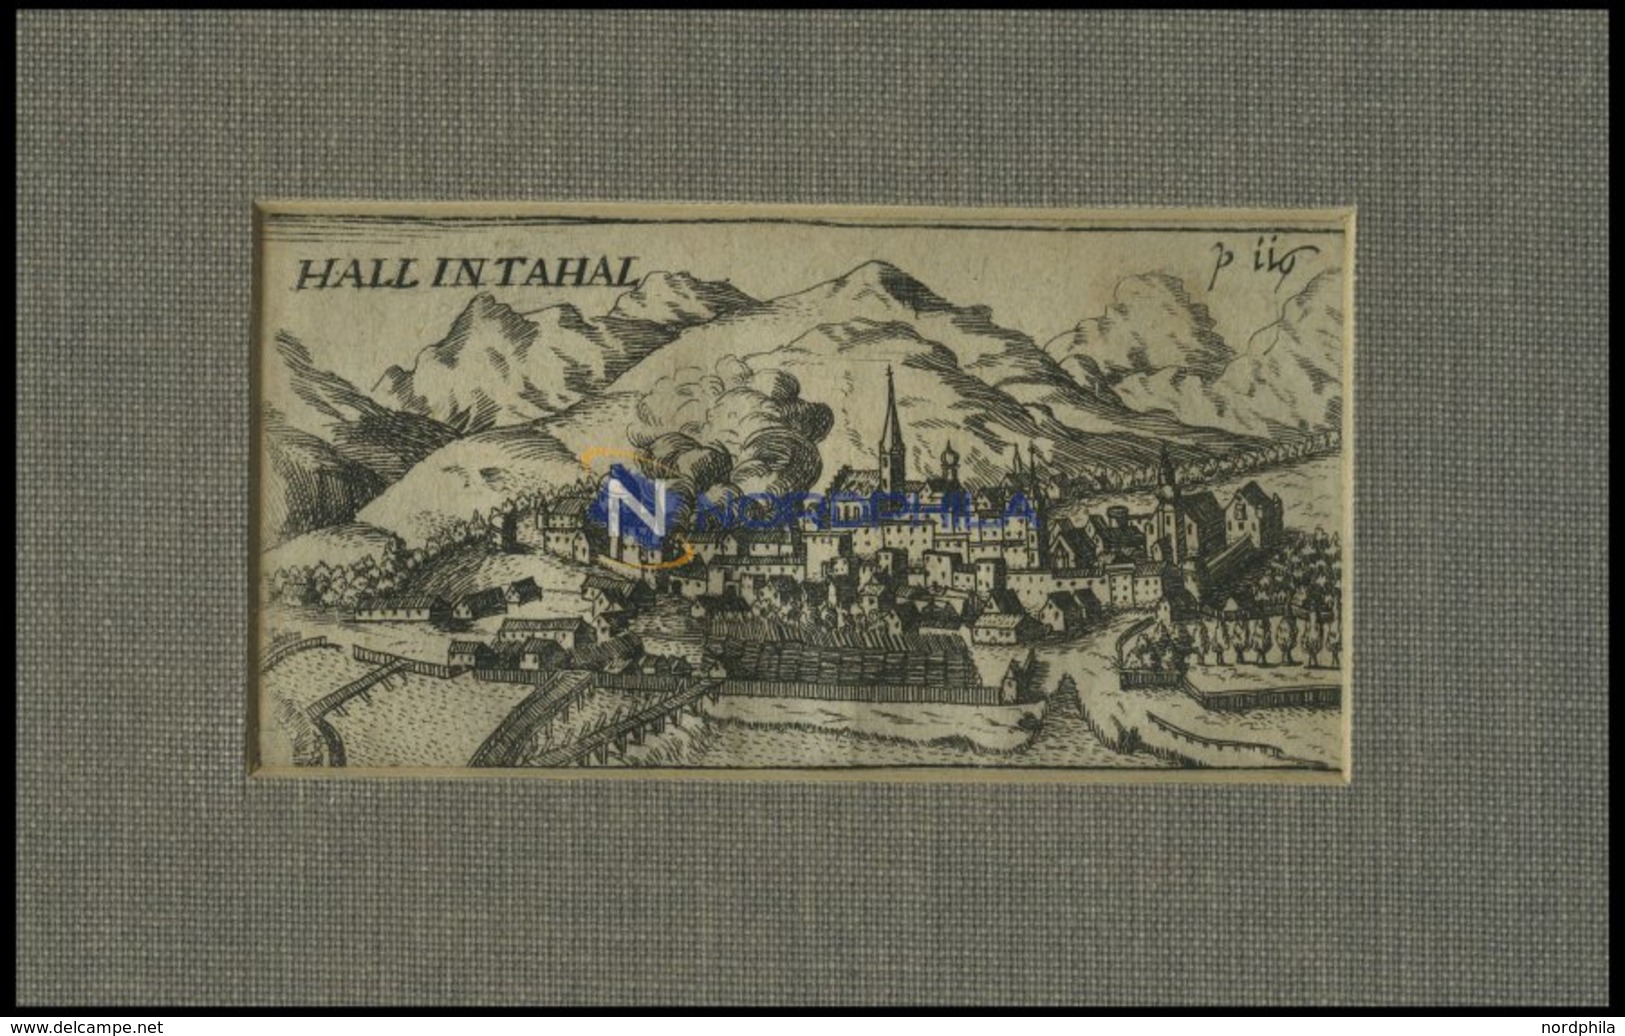 HALL, Gesamtansicht, Kupferstich Von Hoffmann Von 1685 - Litografia